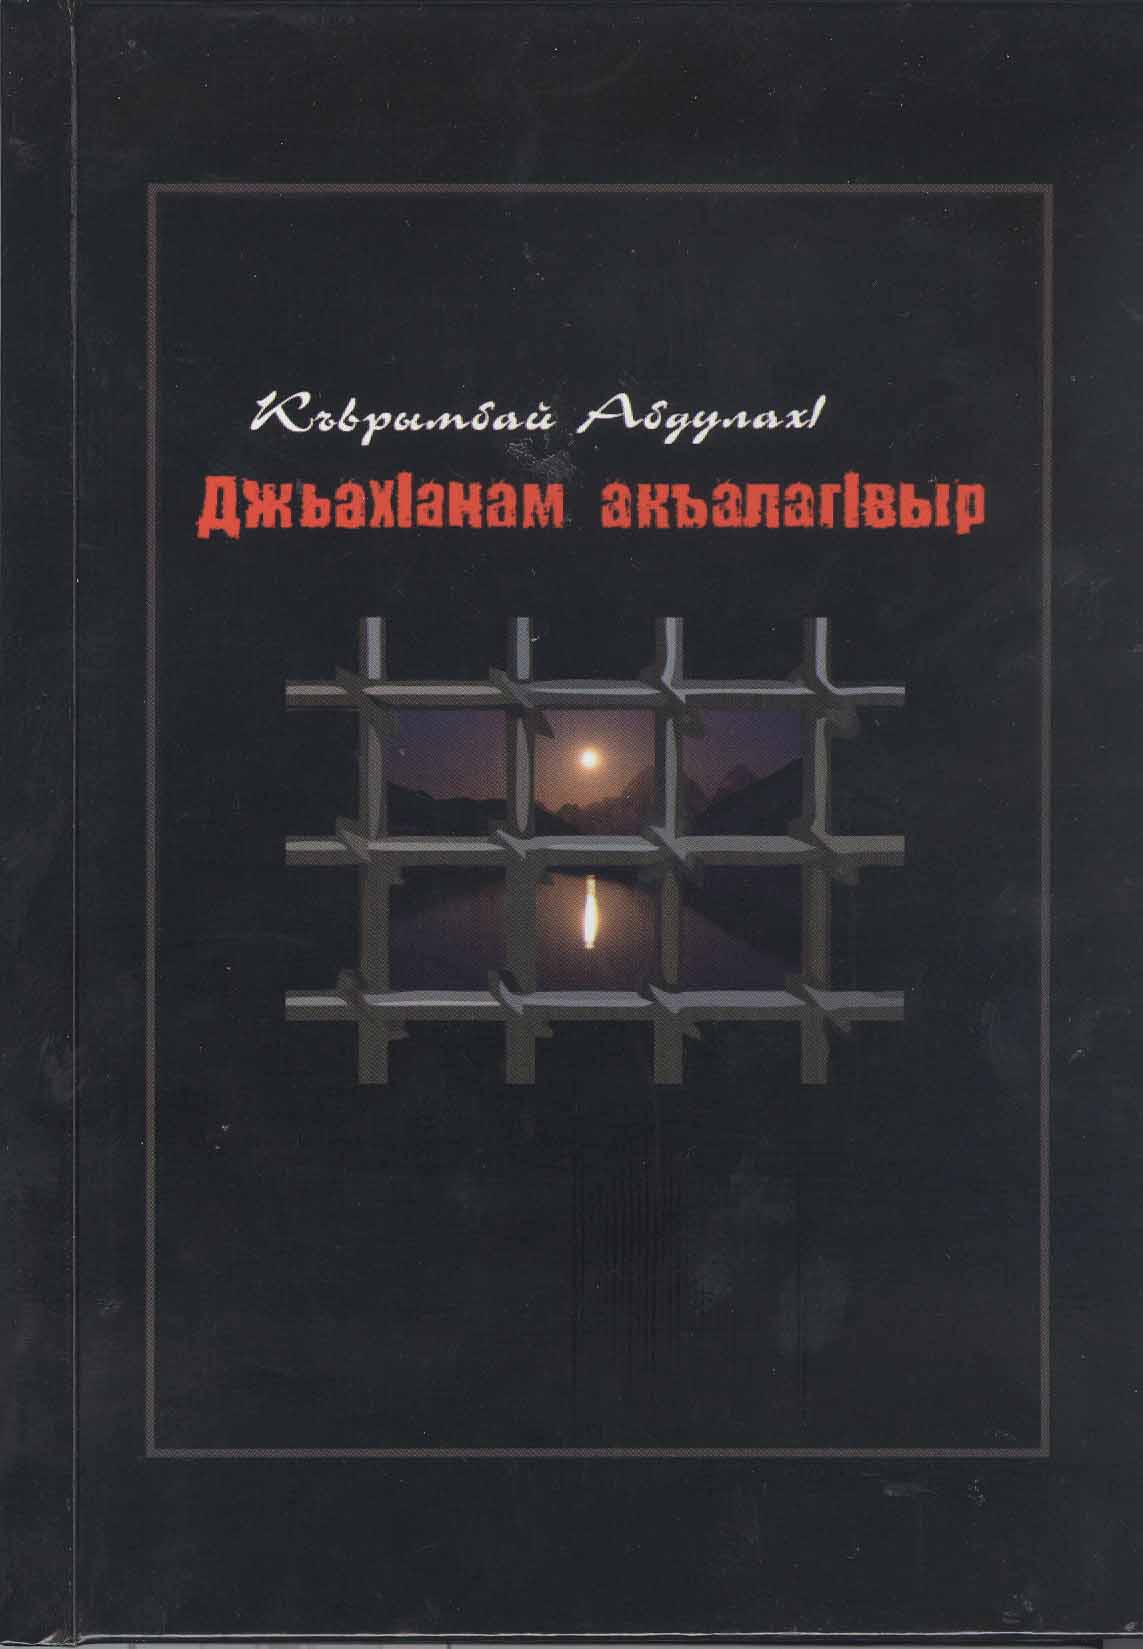 АНО «Алашара» издала книгу Абдулаха Курумбаева «Часовой ада»